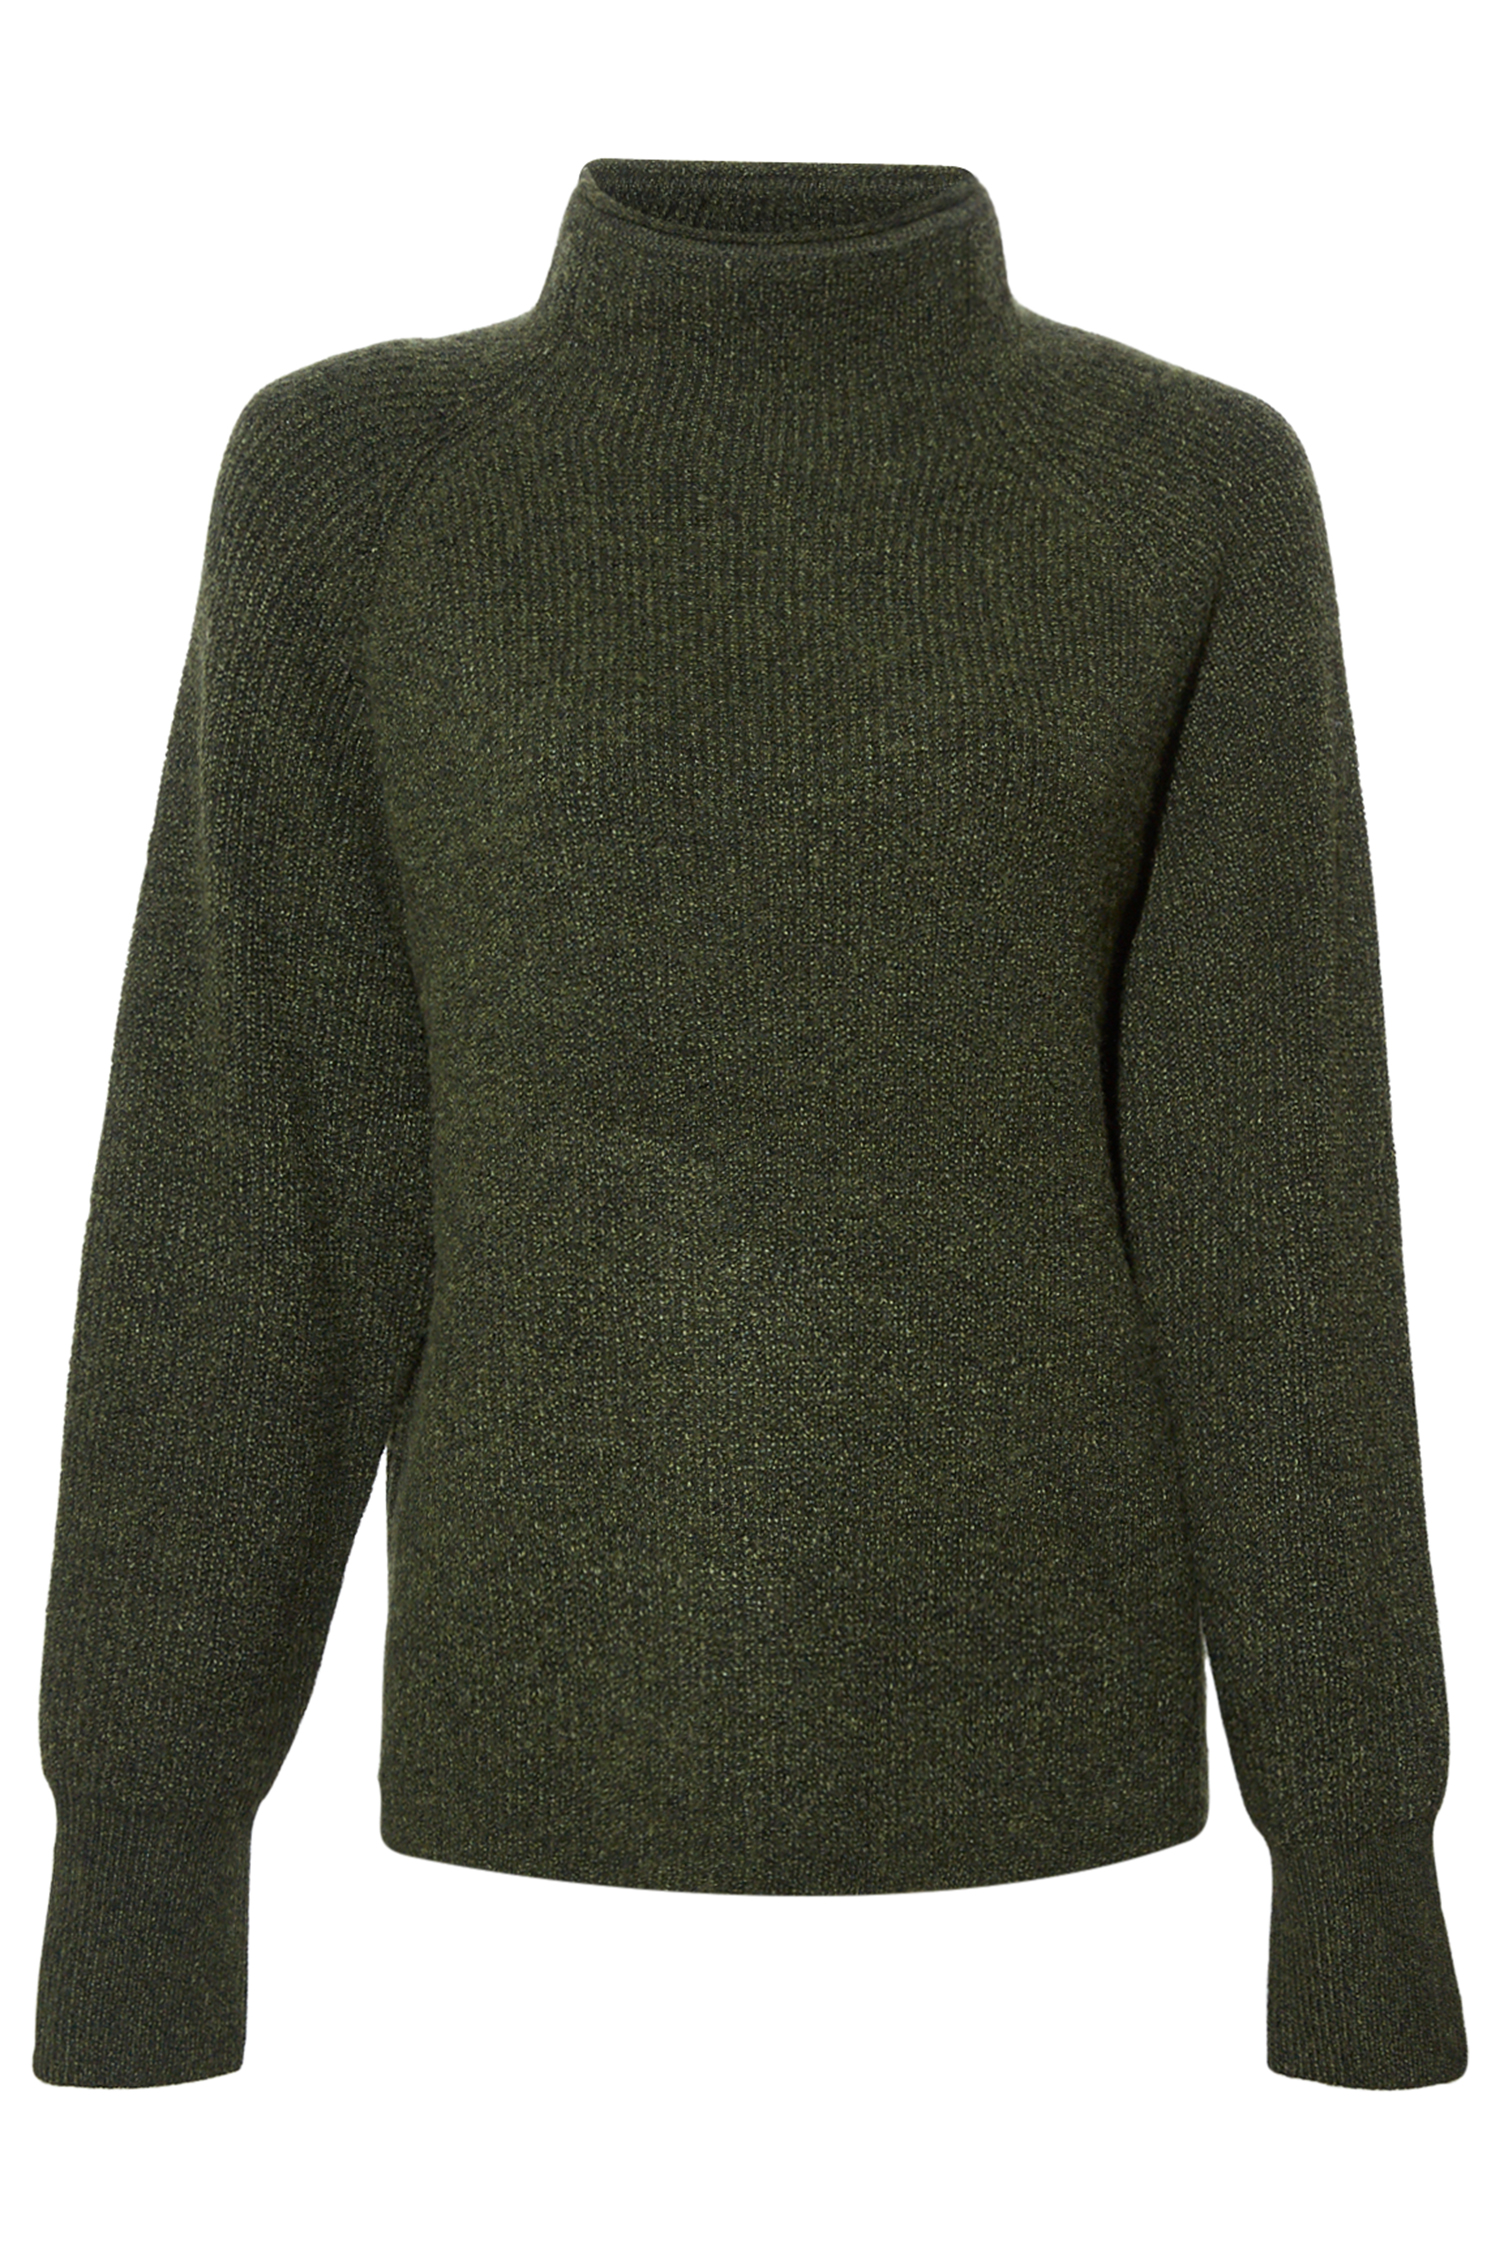 Thread & Supply Round Neck Sweater